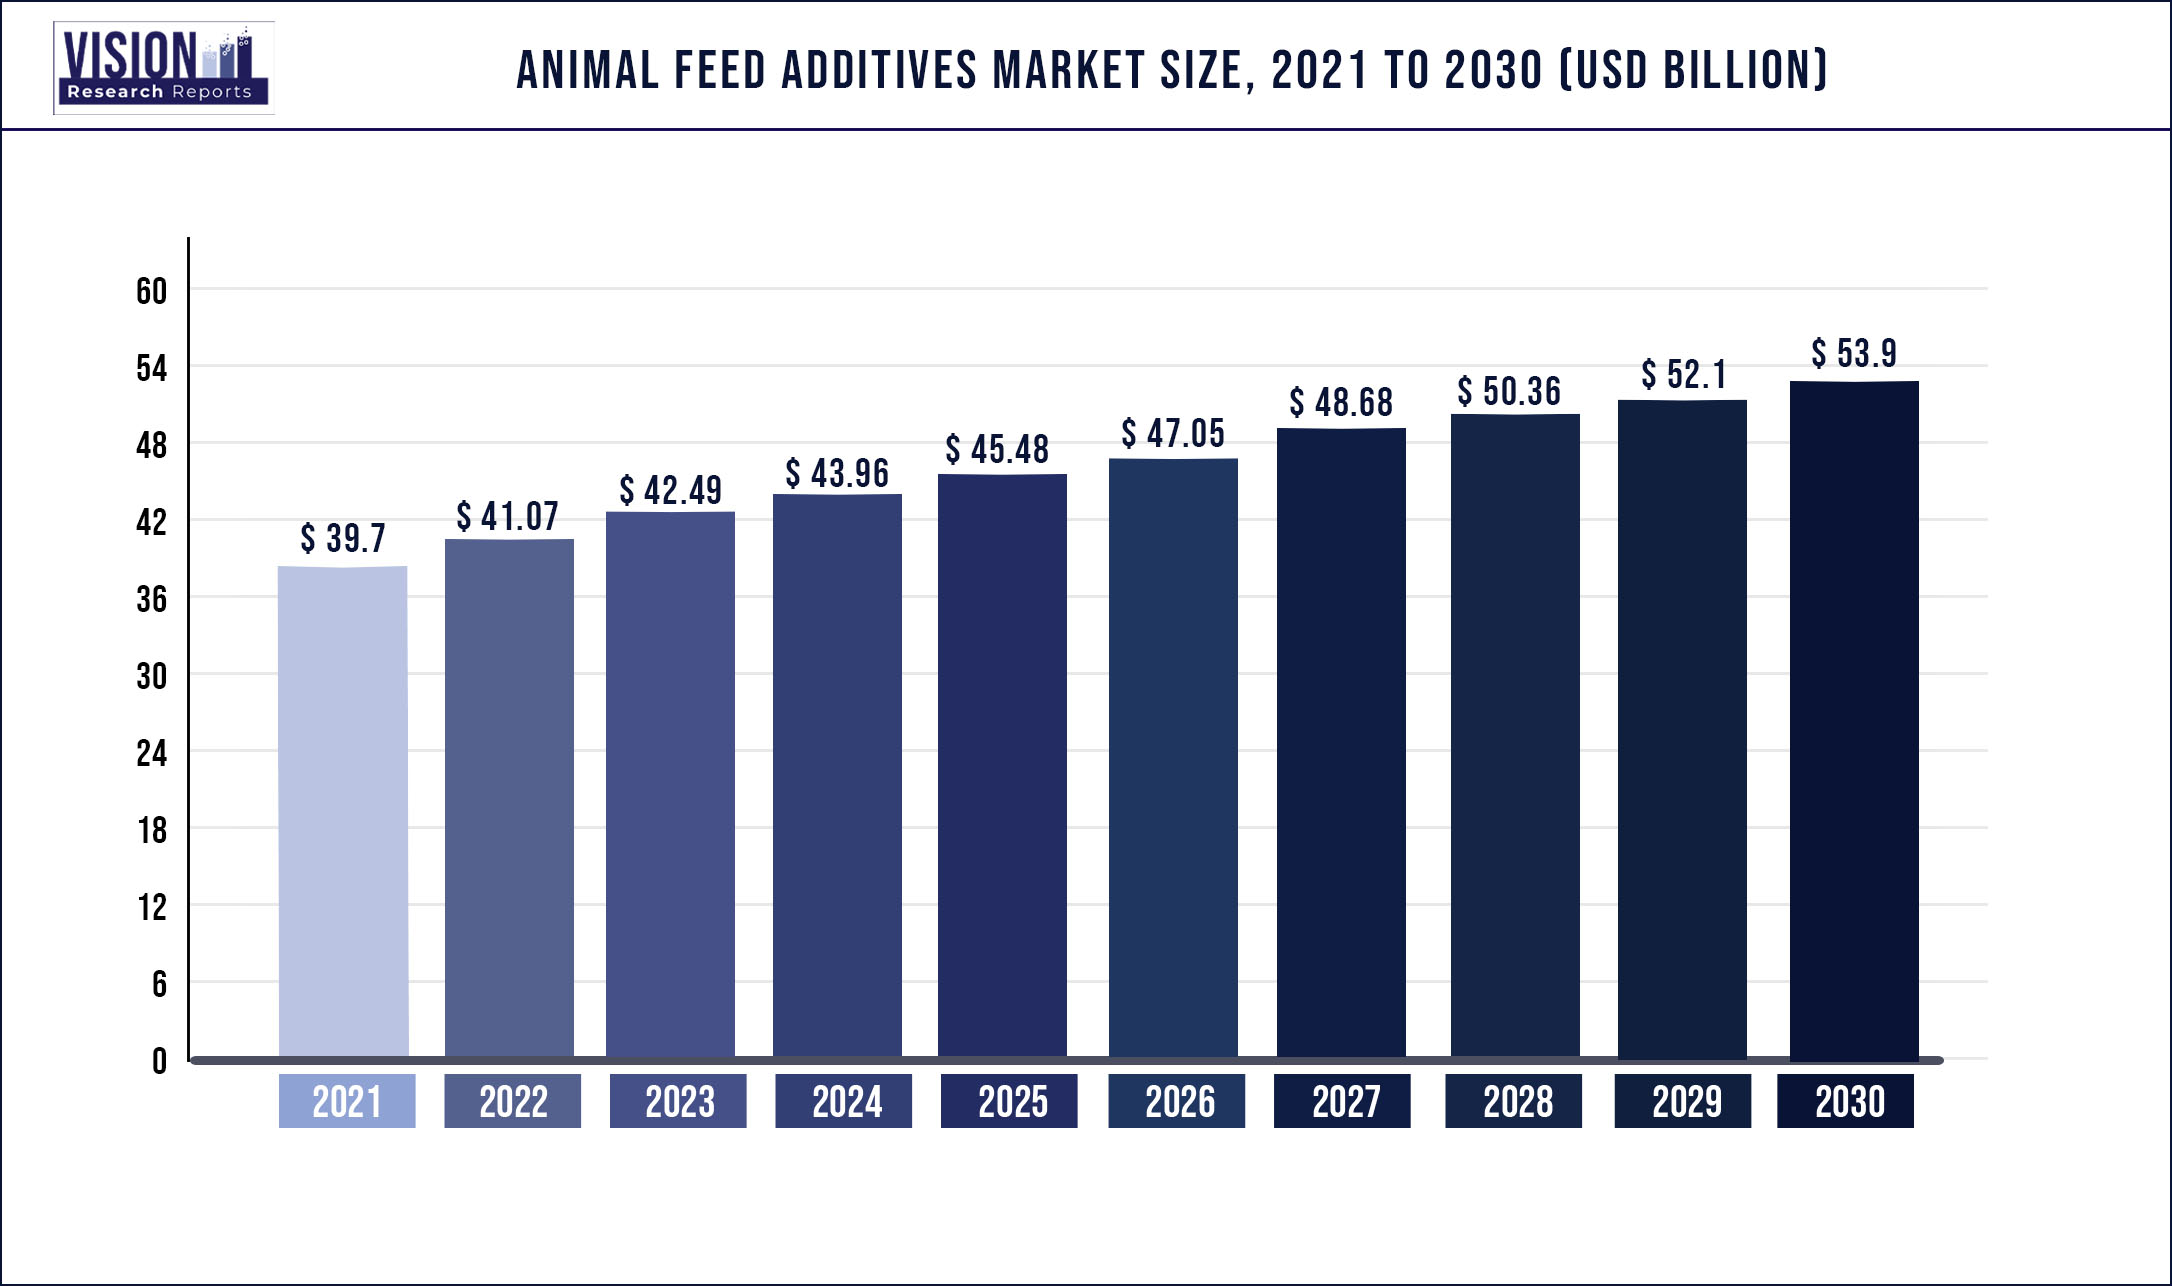 Animal Feed Additives Market Size 2021 to 2030